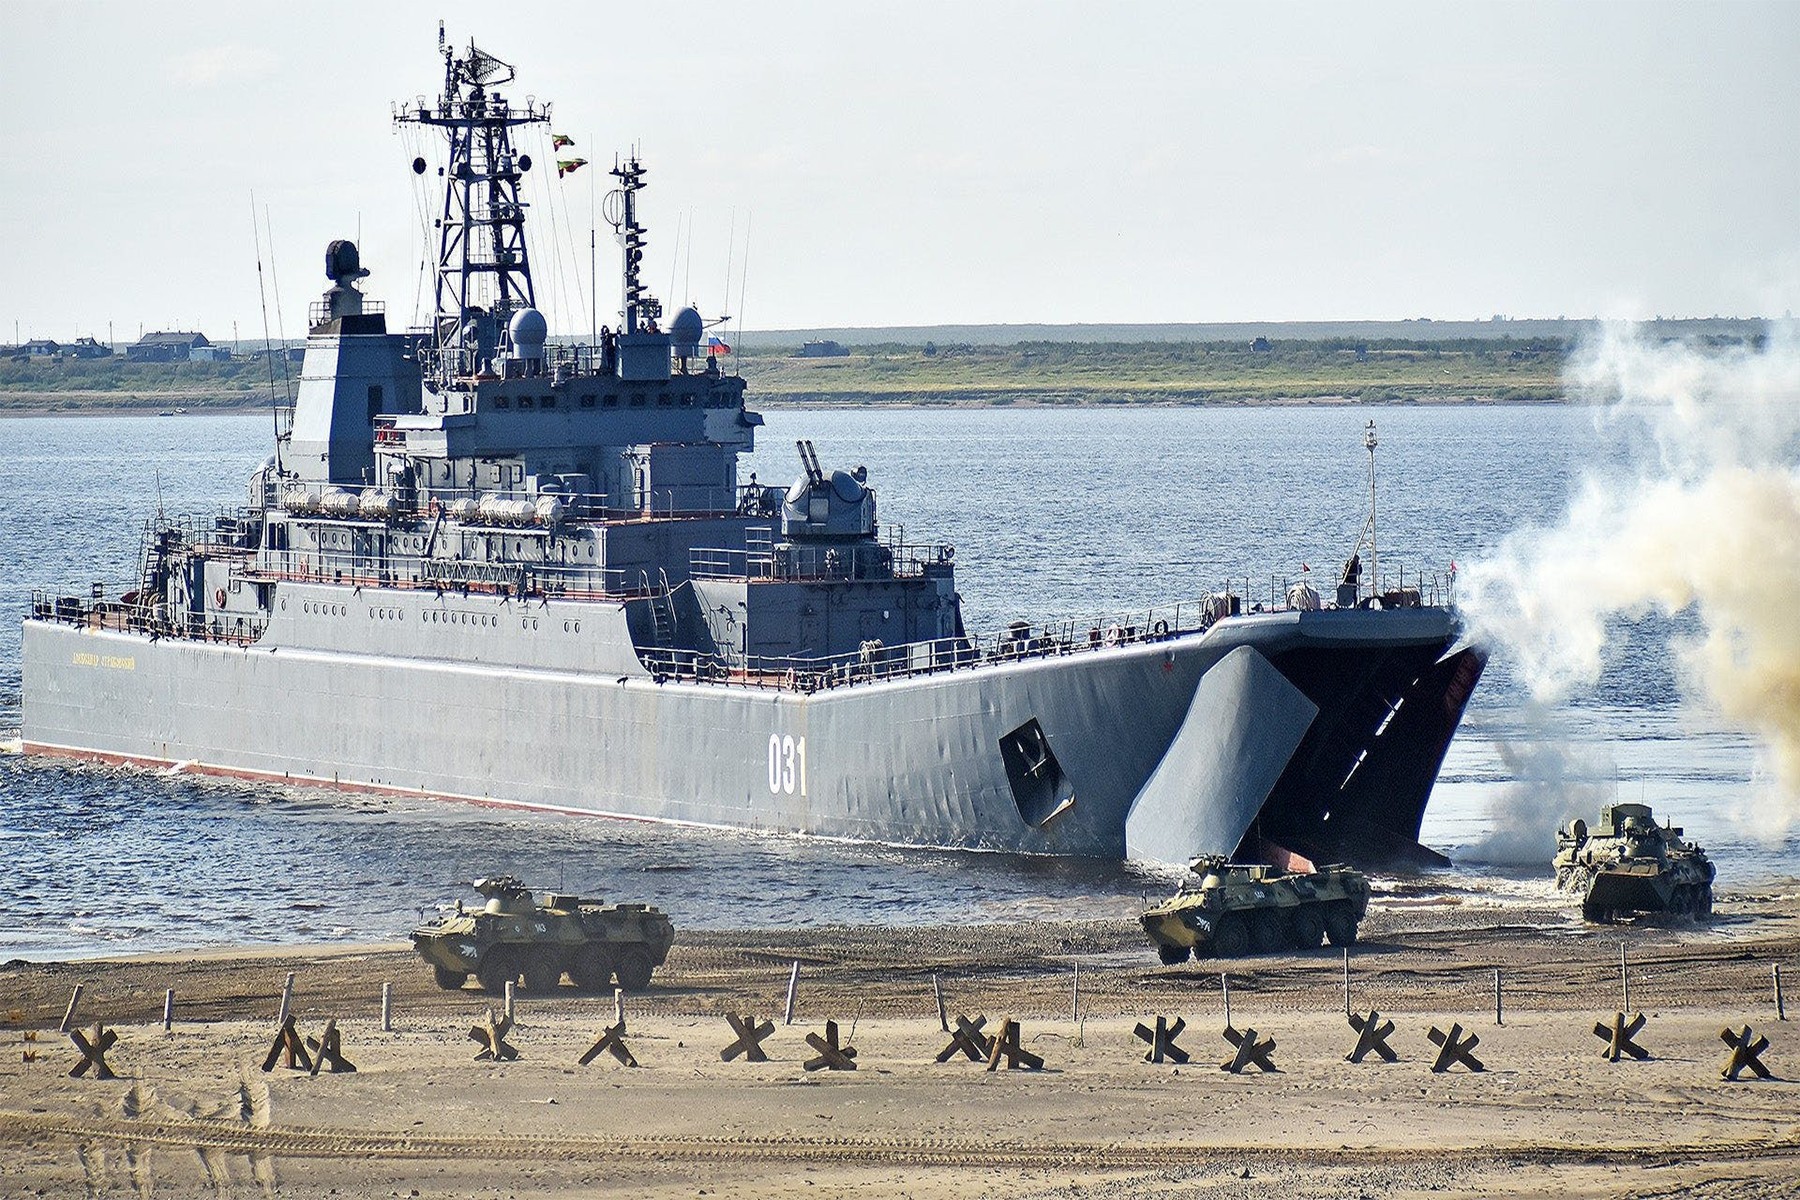 اوکراین مدعی است کشتی روسی را منهدم کرده است